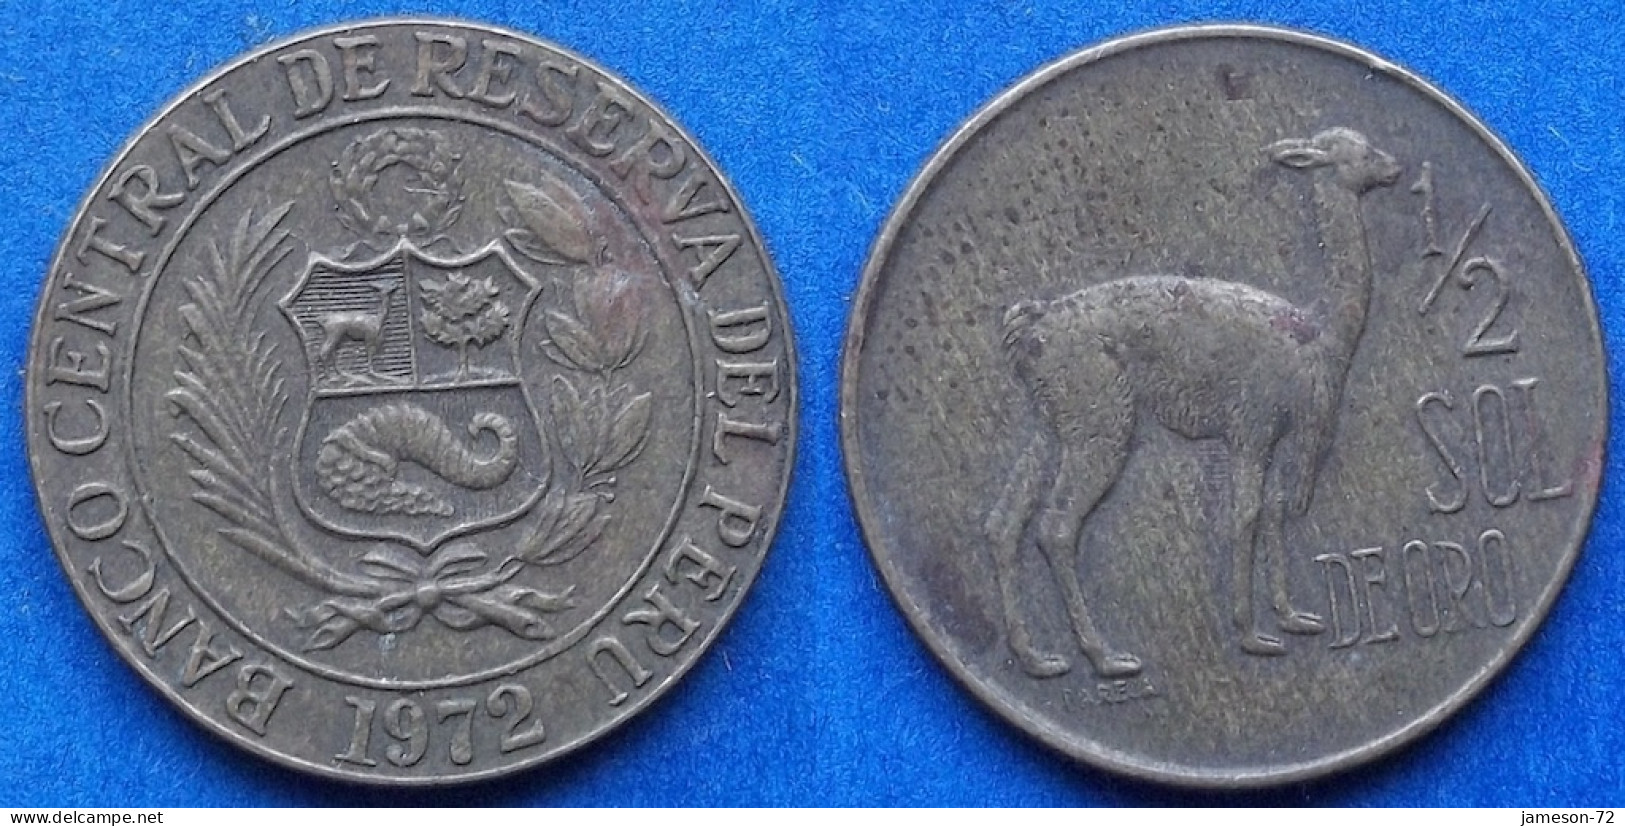 PERU - 1/2 Sol 1972 "Vicuña" KM# 247 Decimal Coinage (1893-1986) - Edelweiss Coins - Peru